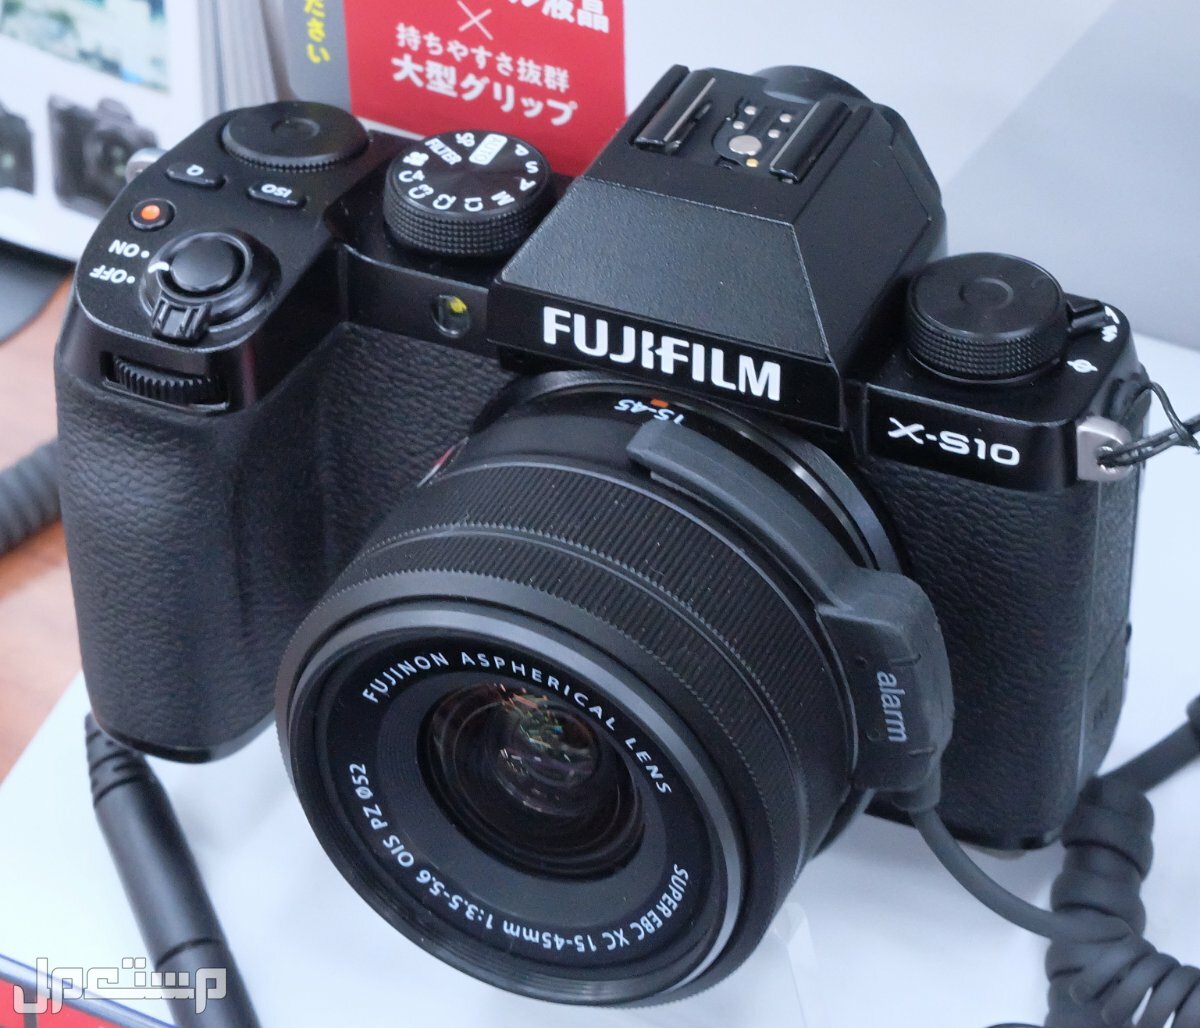 مواصفات ومميزات وعيوب كاميرات التصوير فوجي فيلم في تونس مواصفات كاميرا Fujifilm X-S10